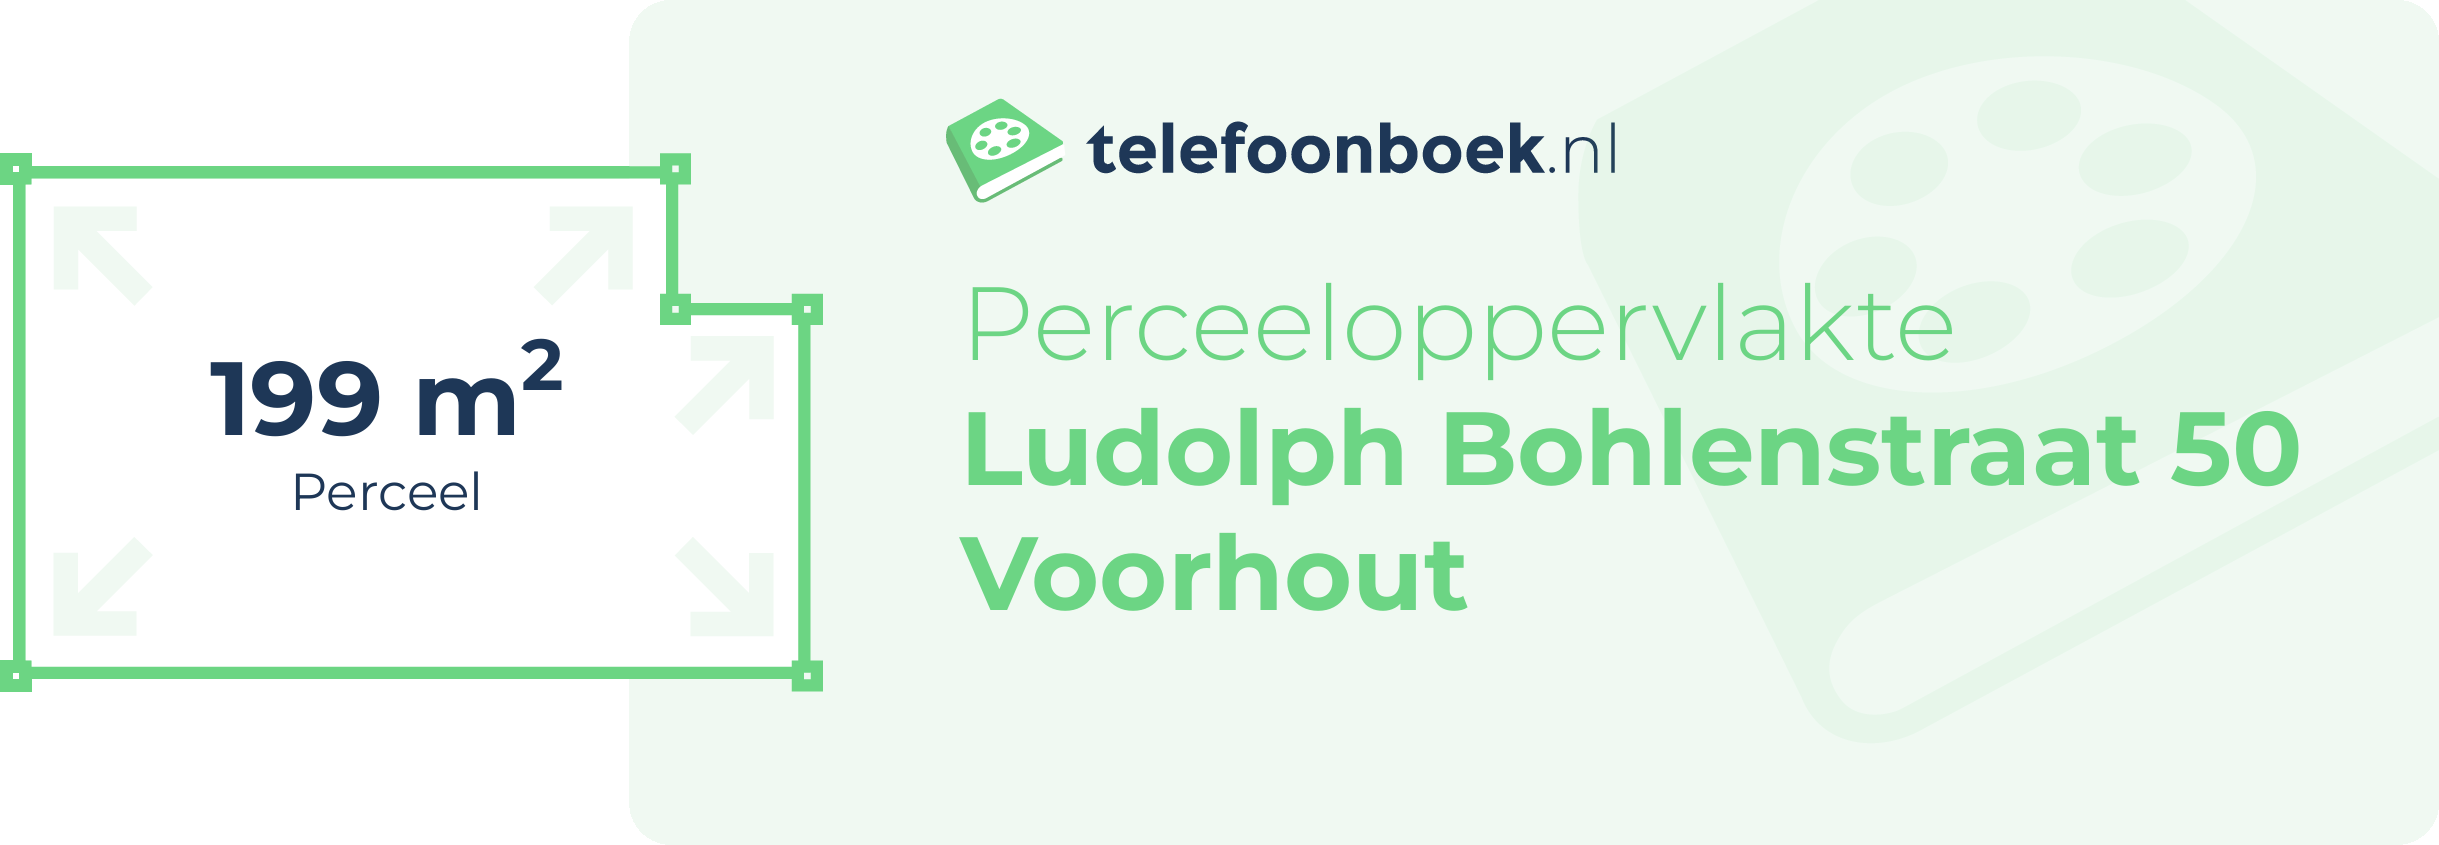 Perceeloppervlakte Ludolph Bohlenstraat 50 Voorhout